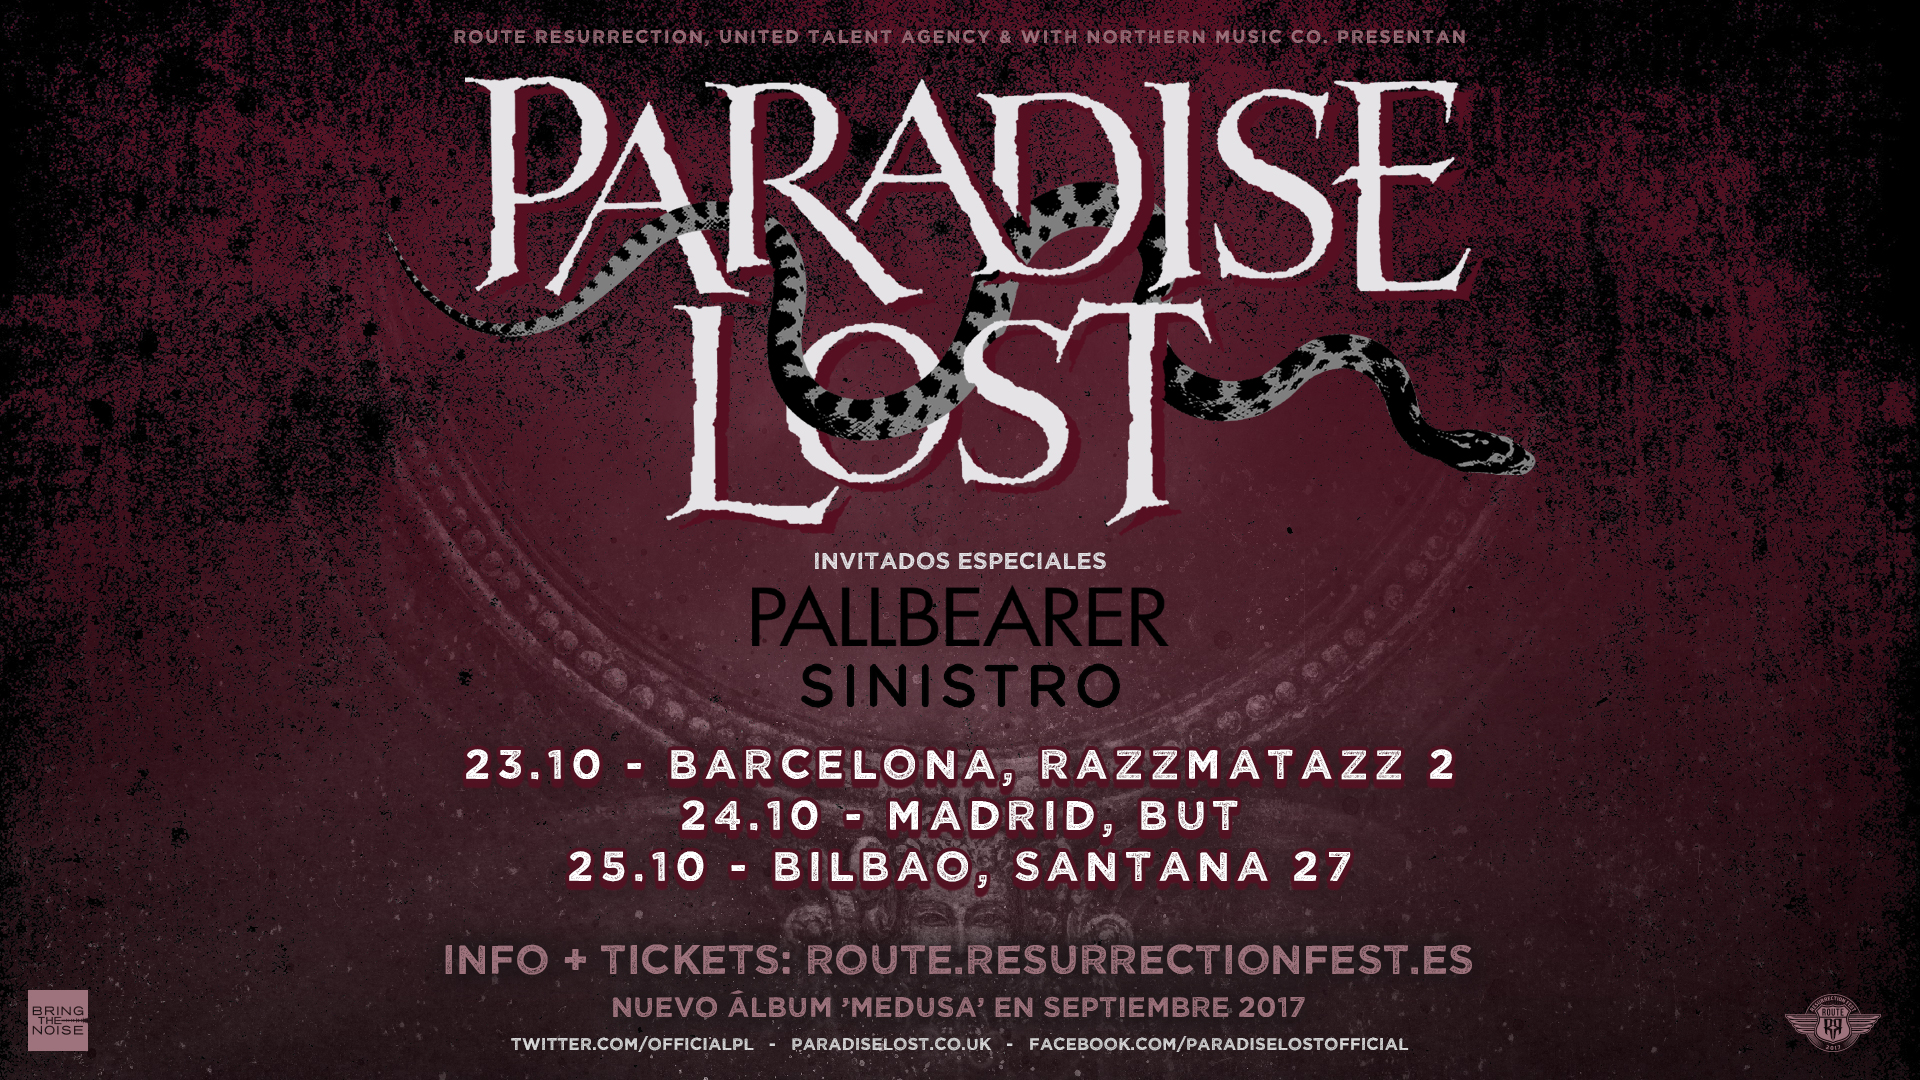 Route Resurrection Fest 2017 - Paradise Lost - Event